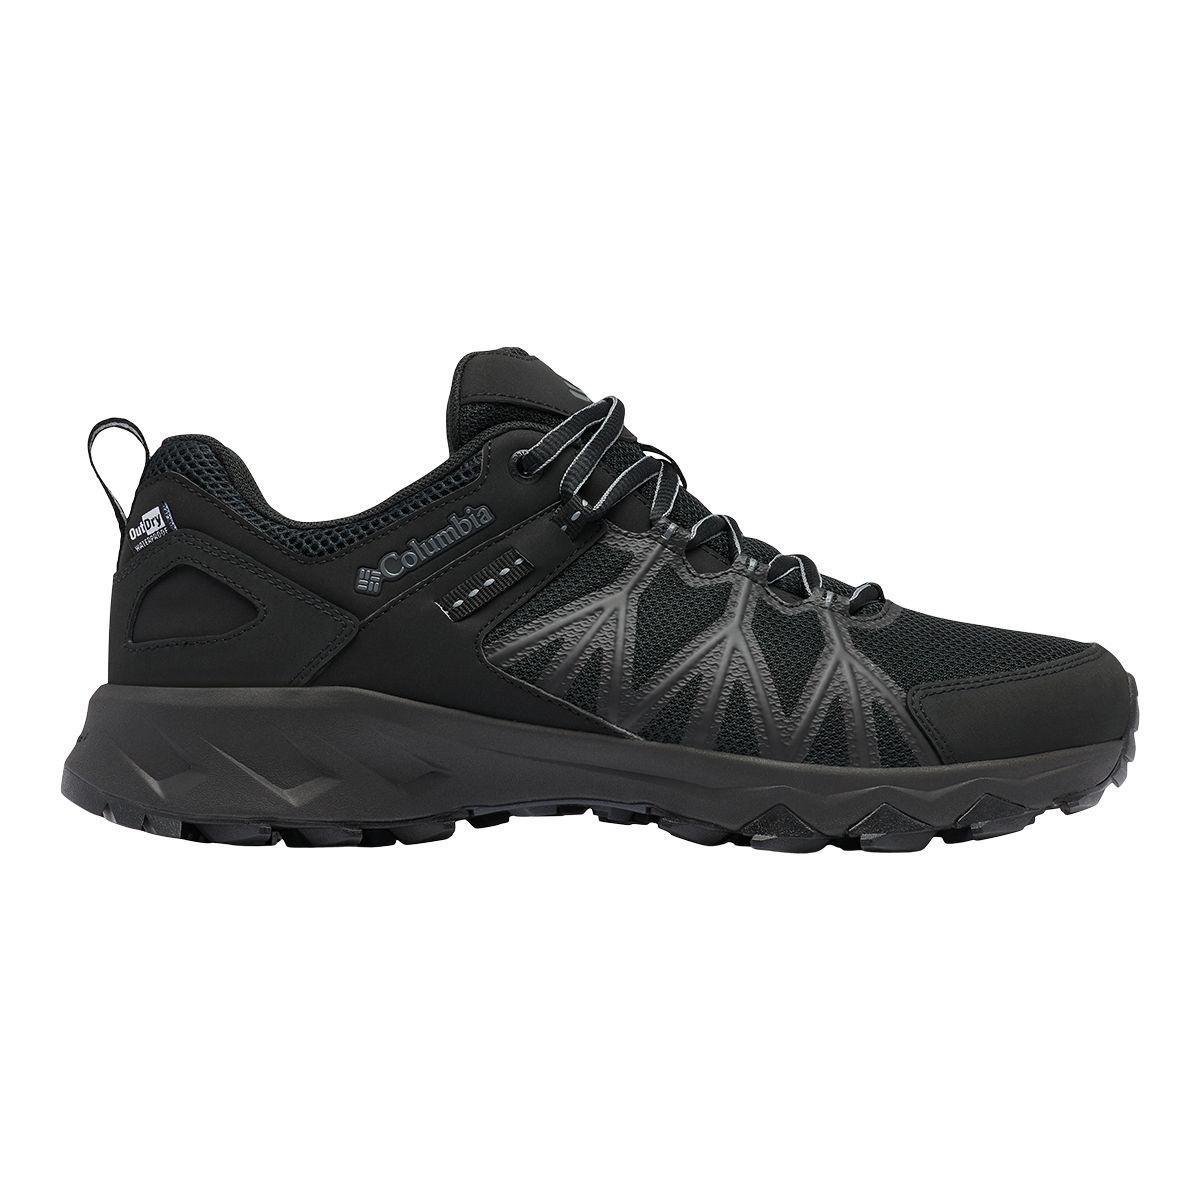 Image of Columbia Men's Peakfreak II OutDry Hiking Shoes Waterproof Breathable